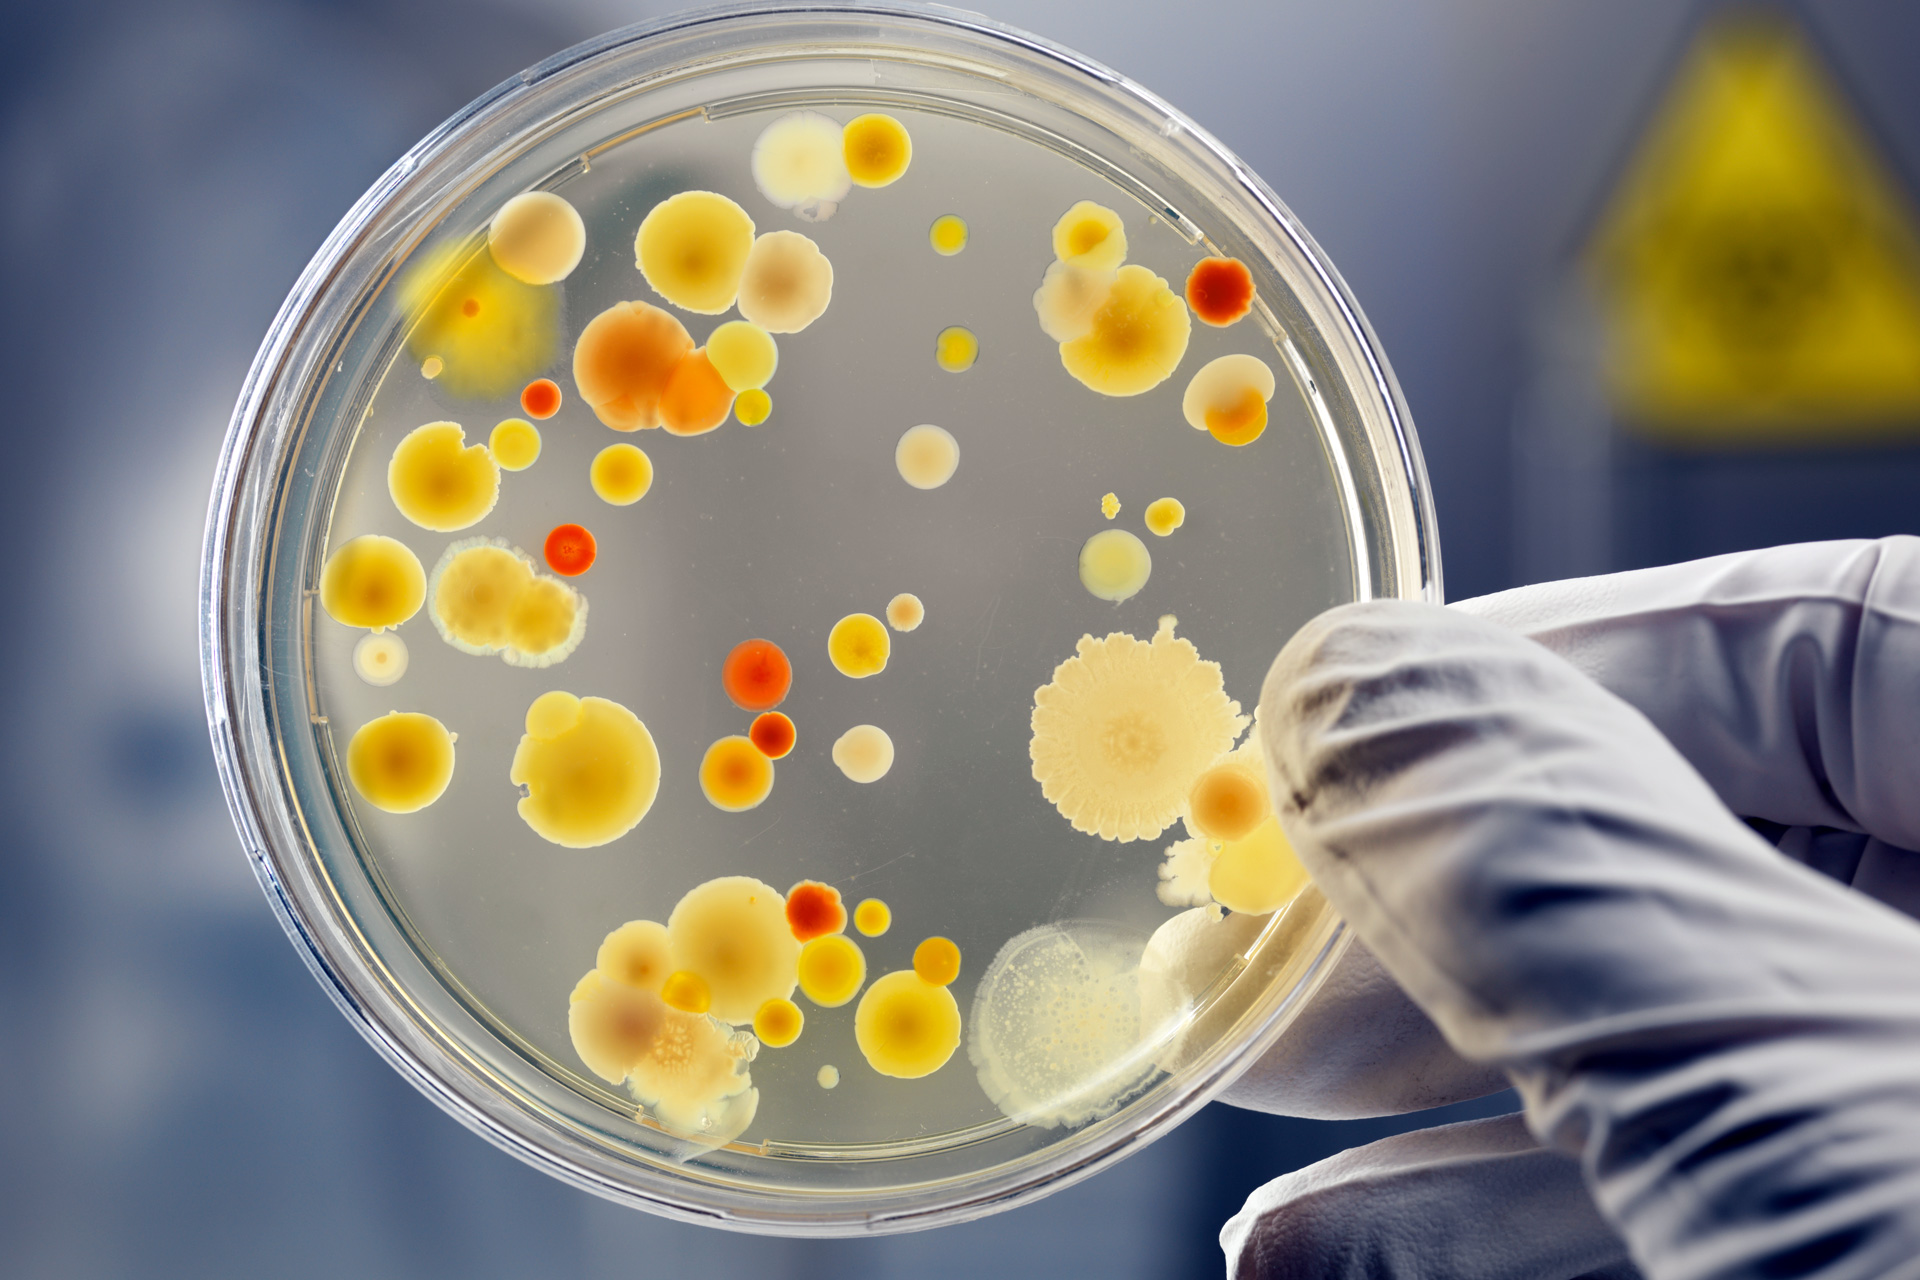 Microbial culture in a petri dish